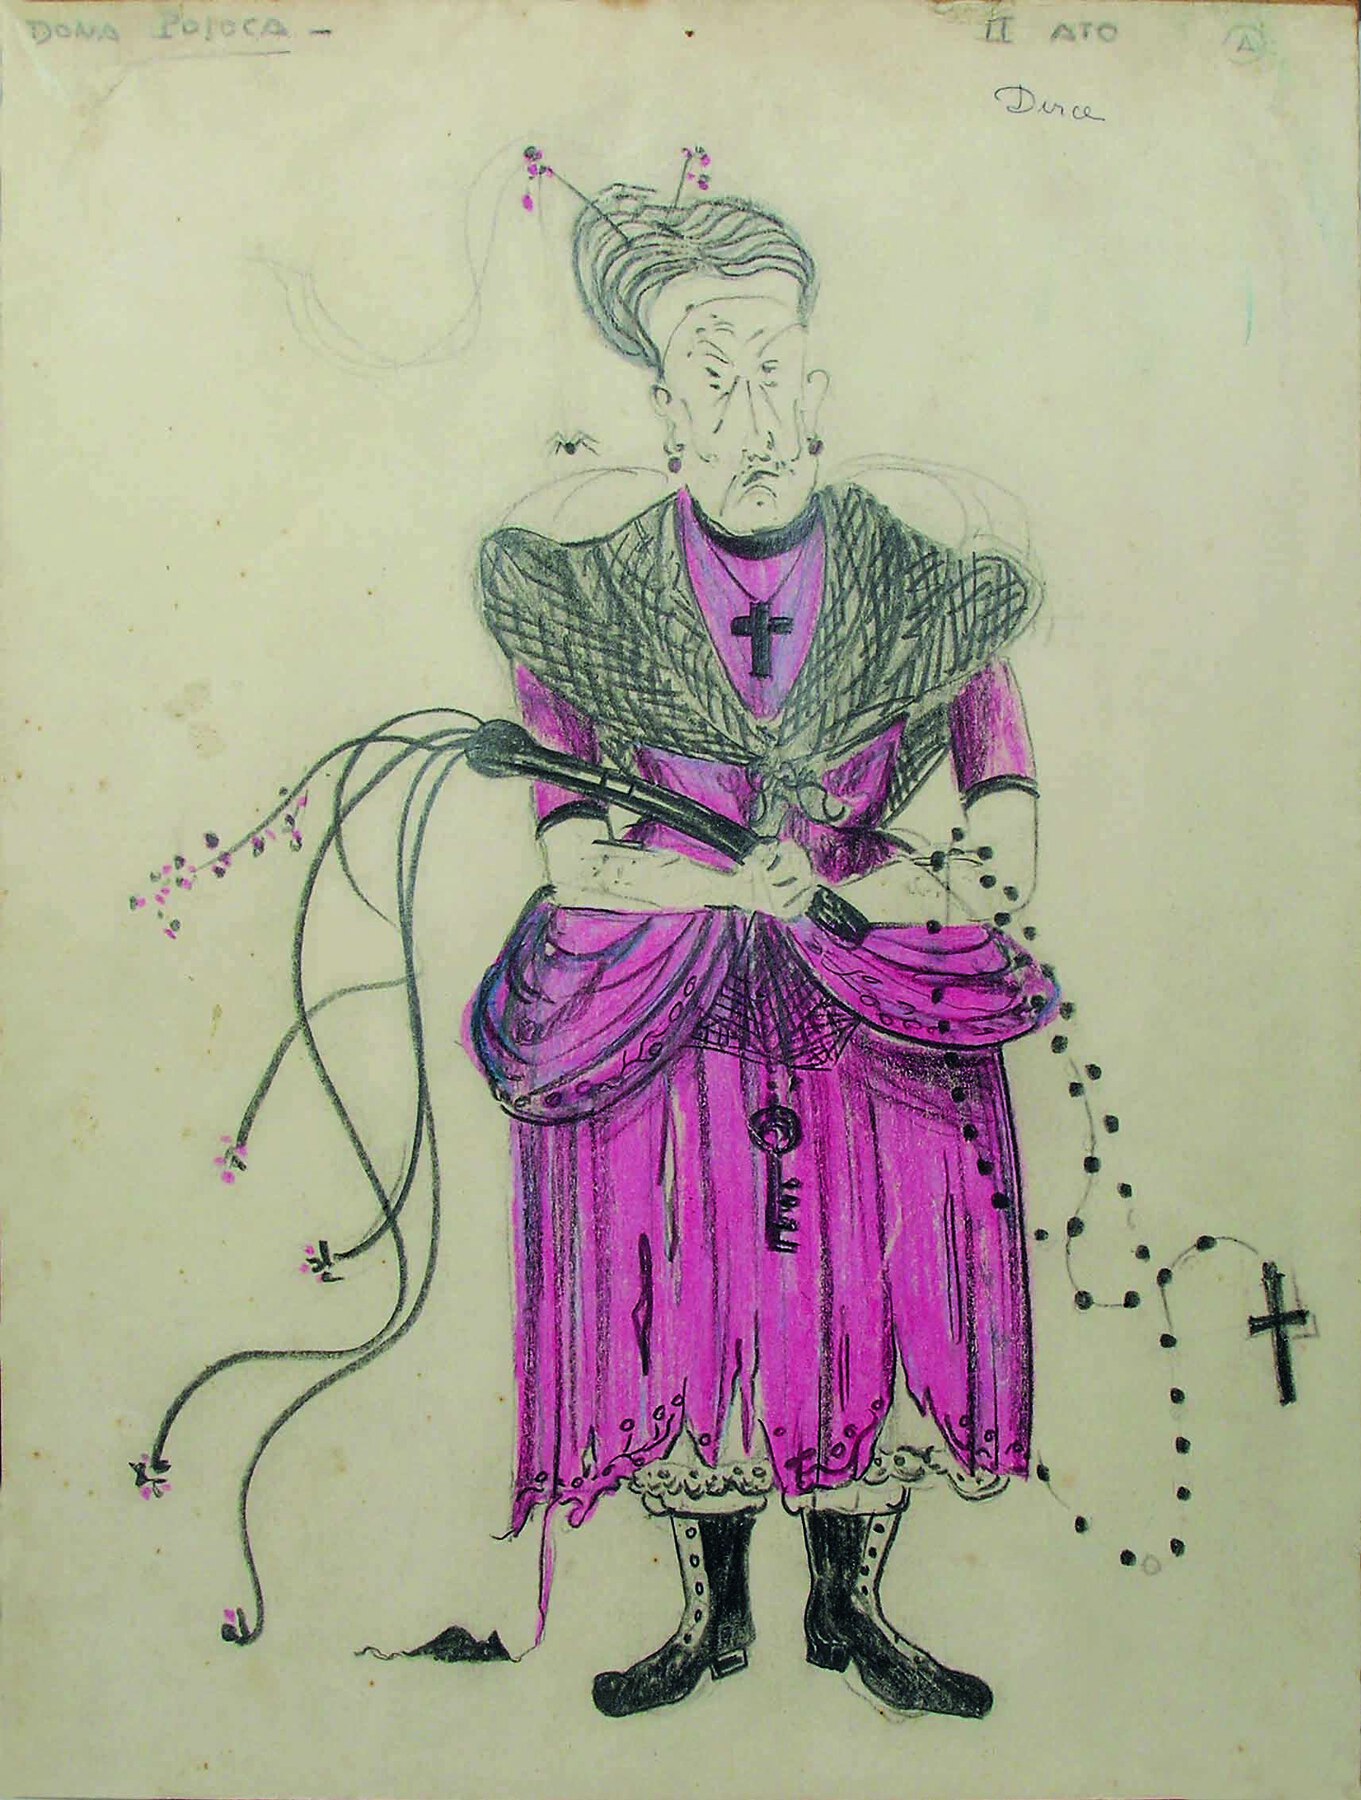 Ilustração. Mulher idosa de cabelo grisalho, usando um vestido longo na cor rosa e um colar com um grande crucifixo. Ela segura em suas mãos um chicote e um terço.